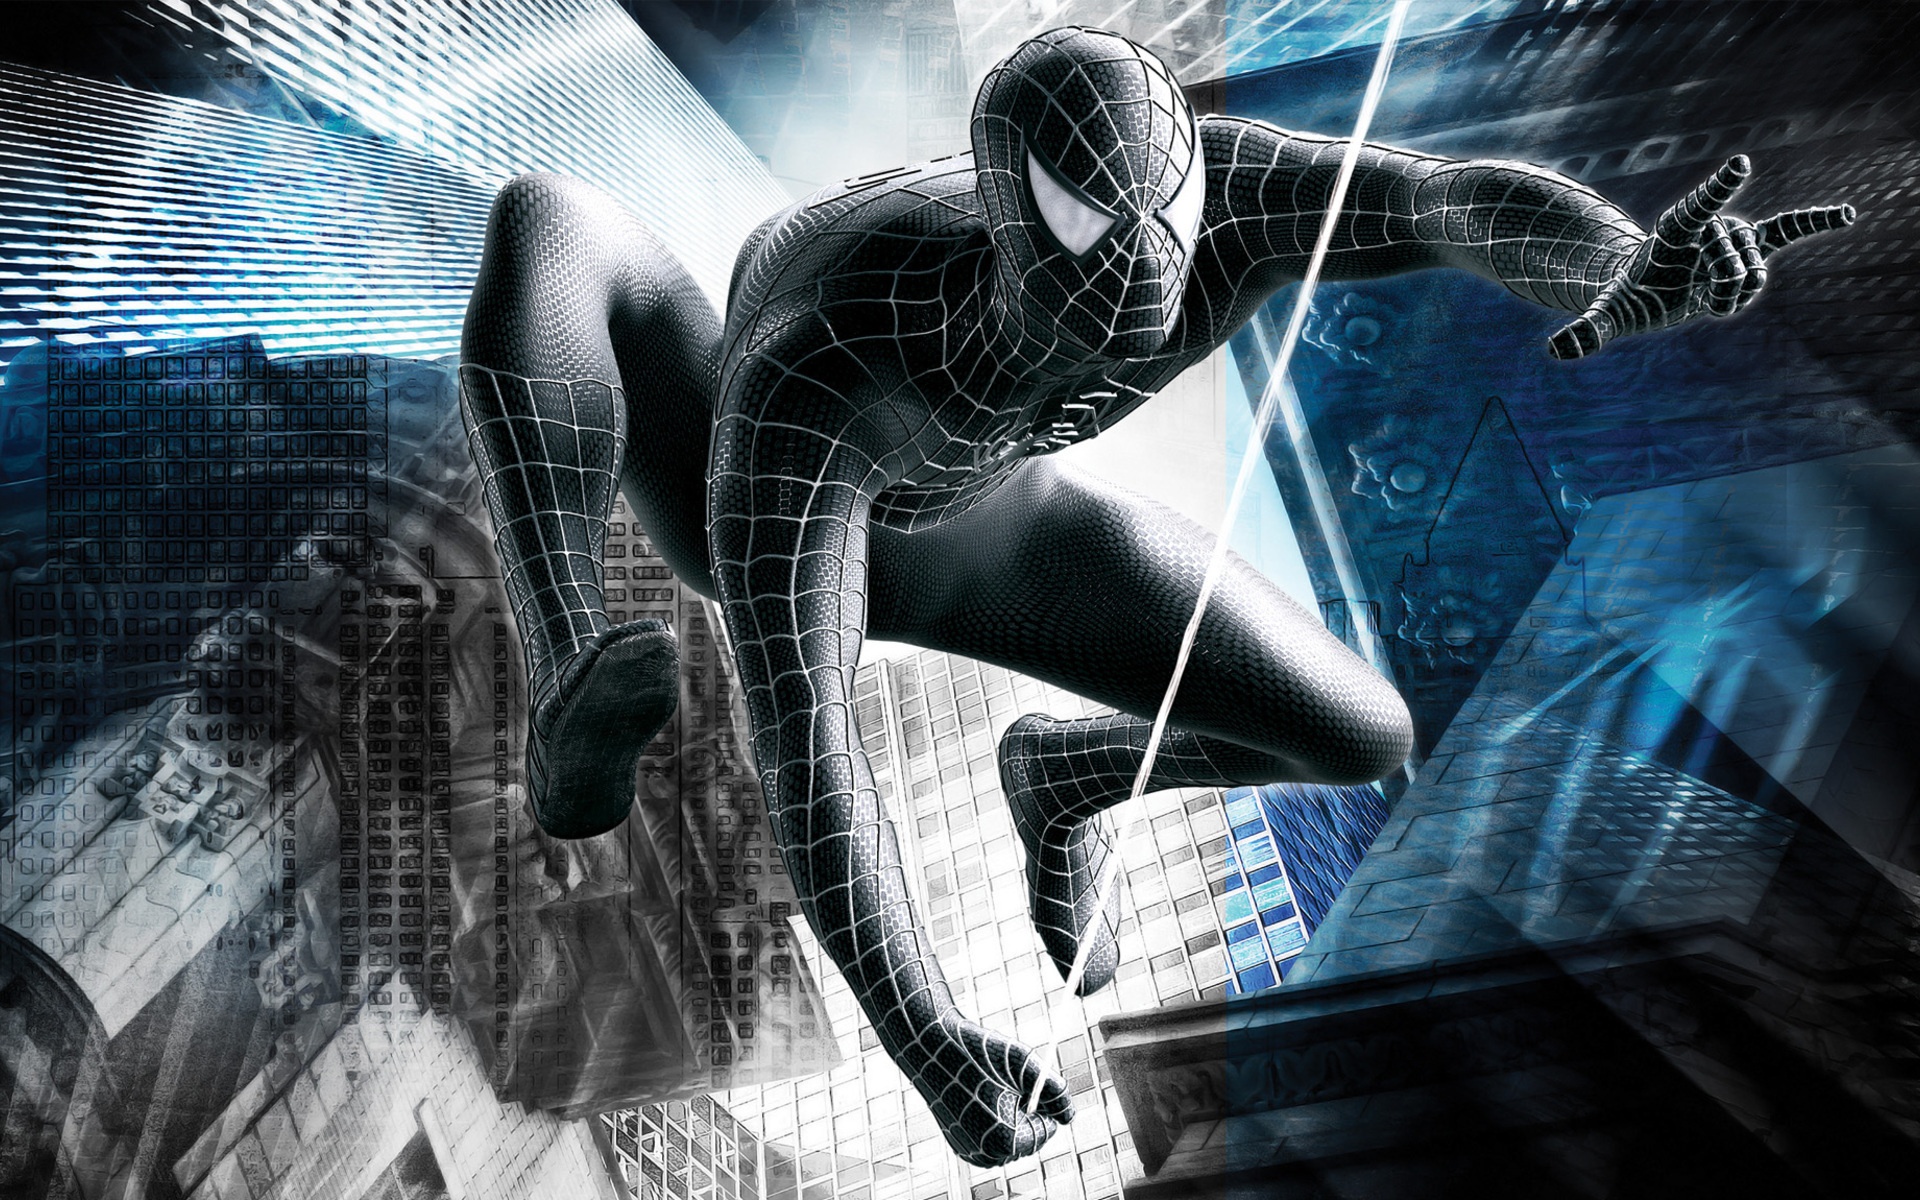 spiderman wallpaper hd,disegno grafico,personaggio fittizio,cg artwork,uomo ragno,illustrazione